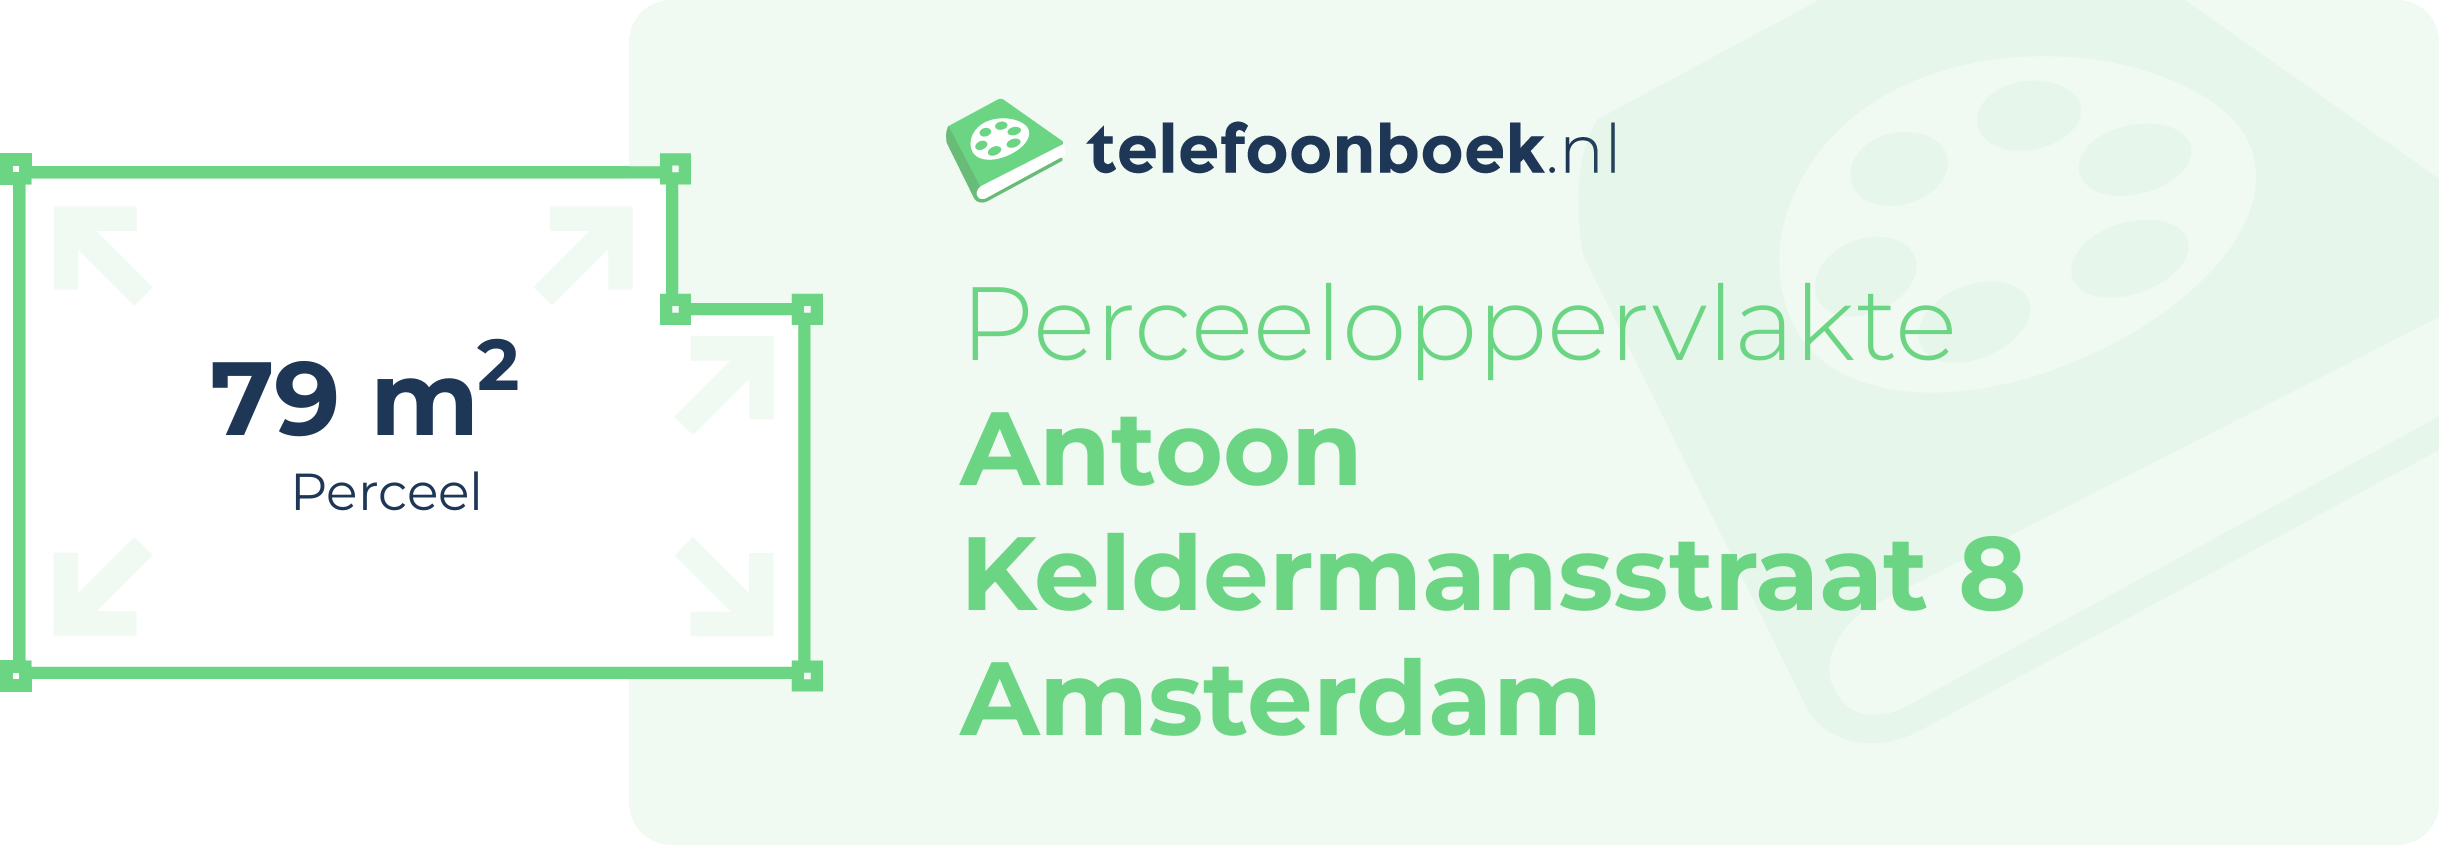 Perceeloppervlakte Antoon Keldermansstraat 8 Amsterdam